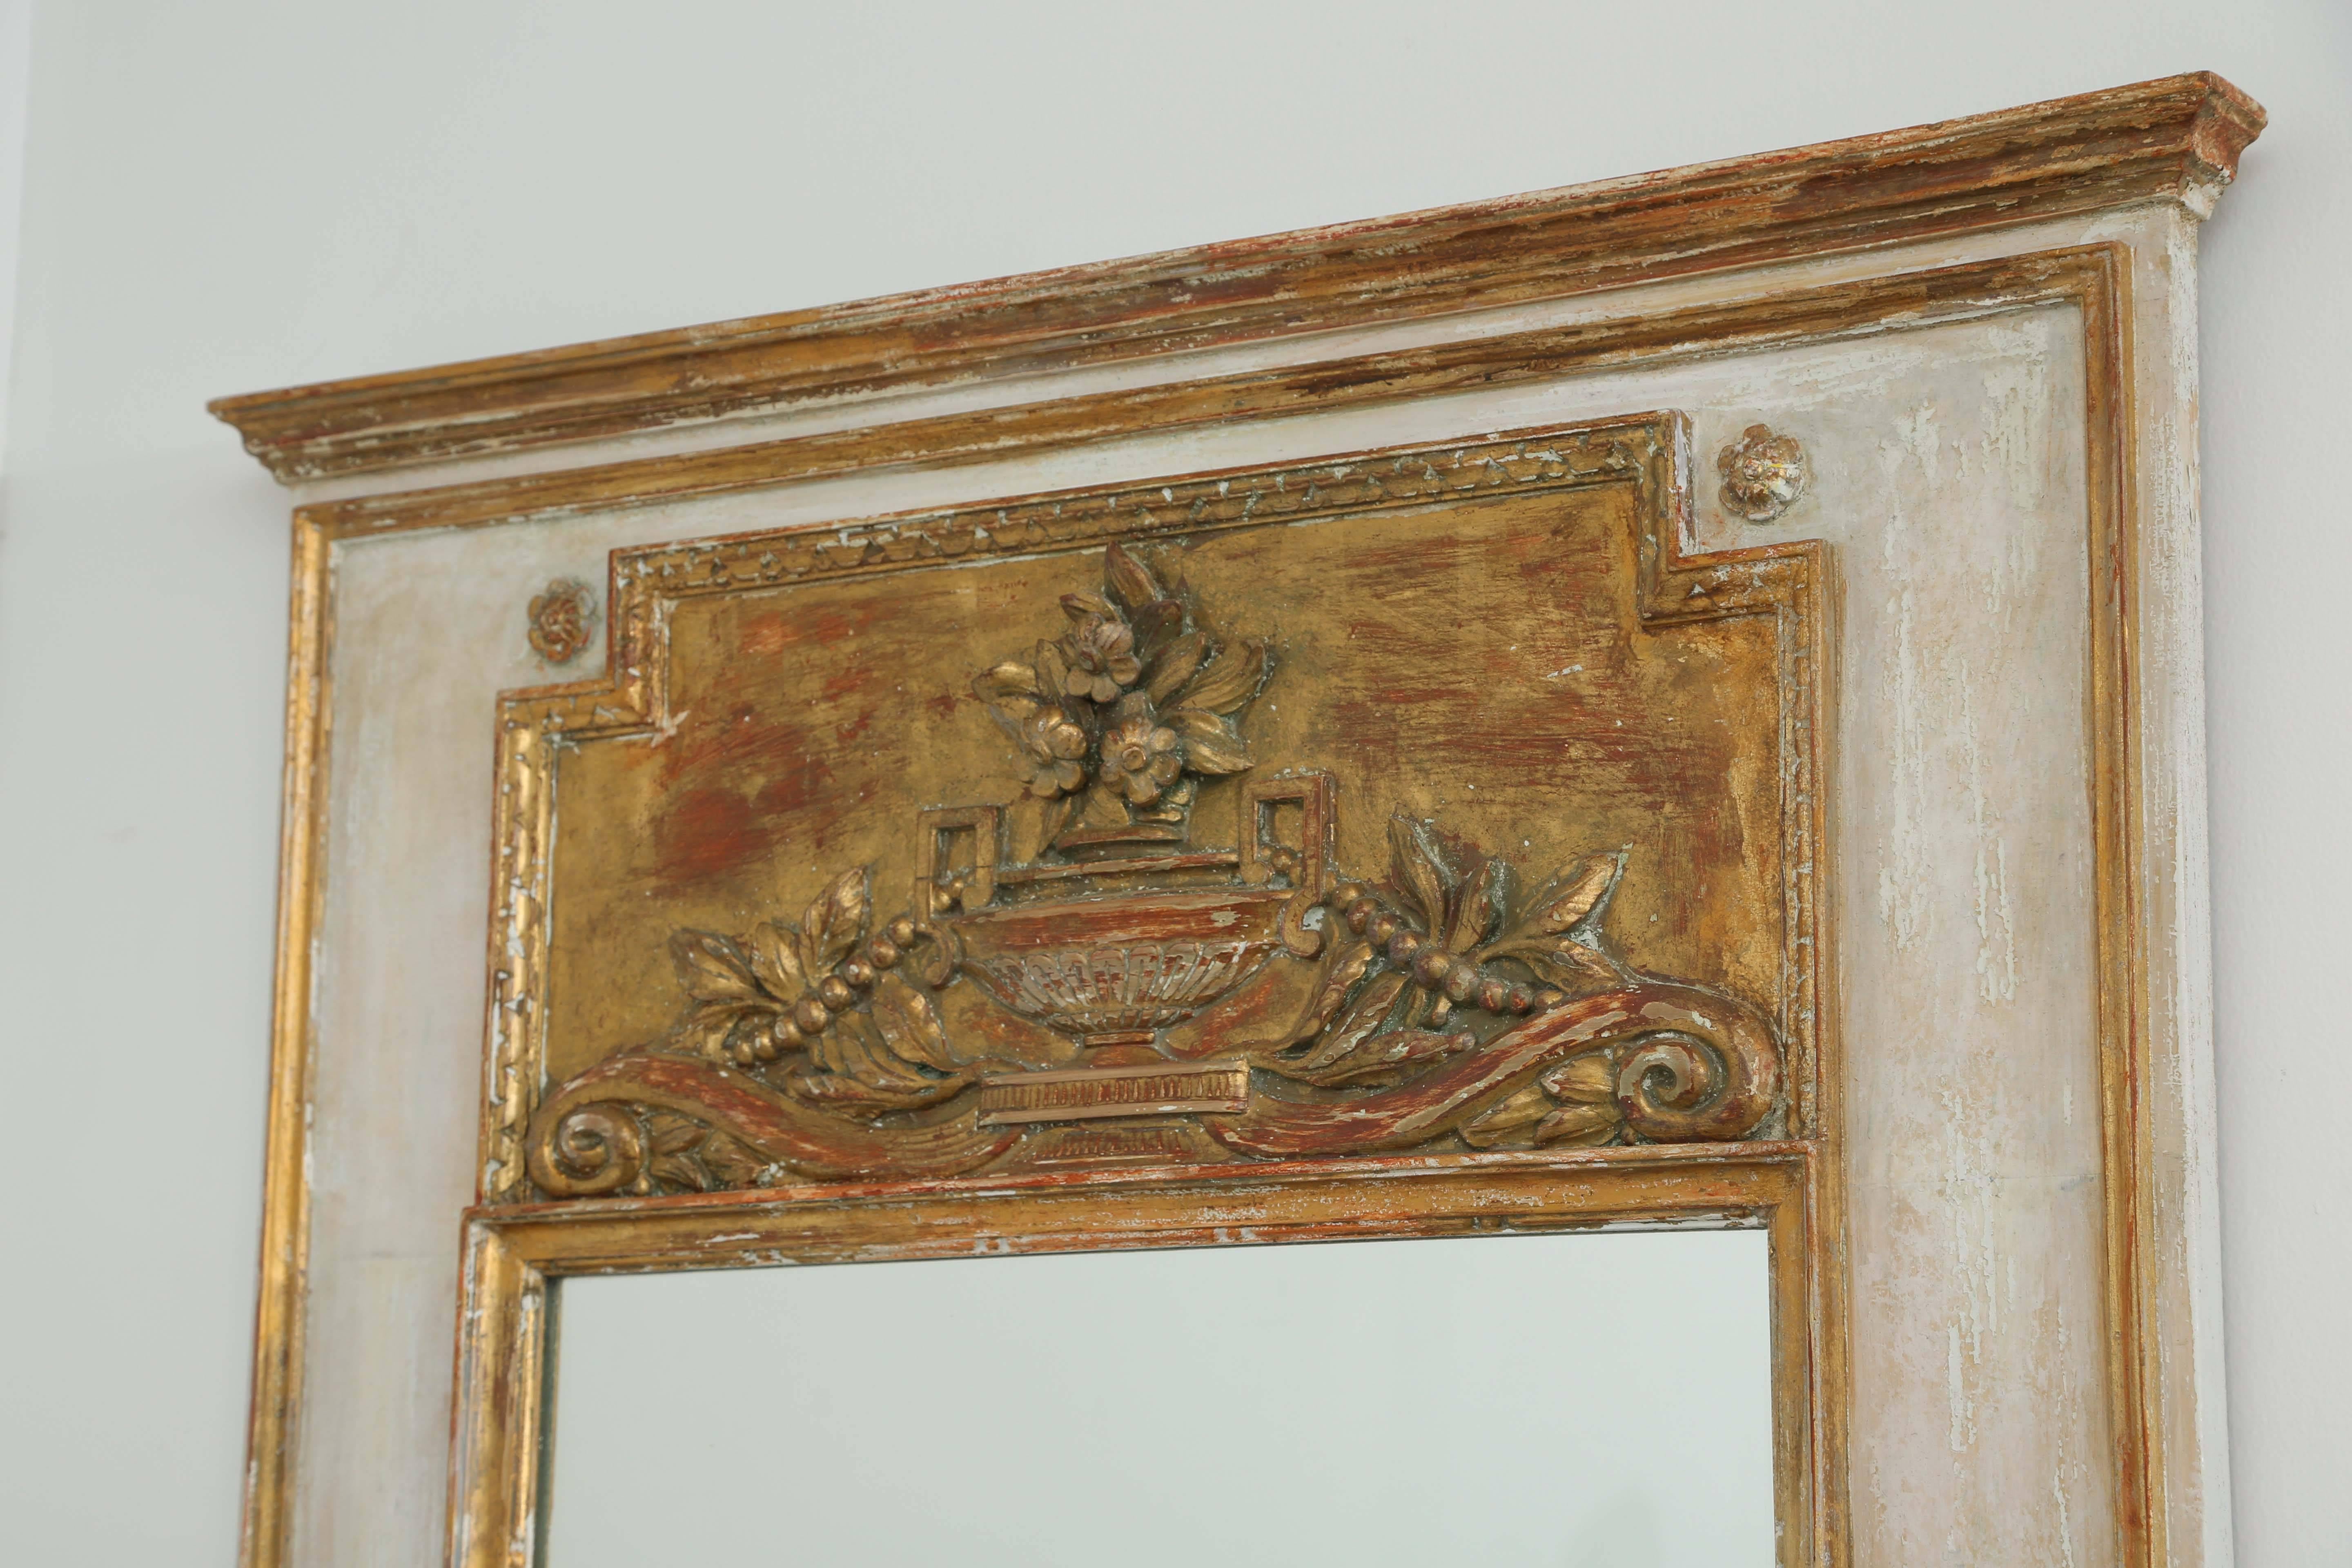 Miroir Trumeau, à décor peint et doré à la feuille, présentant une corniche à gradins, un panneau décoratif orné d'une urne fleurie, flanquée d'acanthes et de rinceaux, dans une bordure godronnée, surmontant un miroir rectangulaire dans un cadre